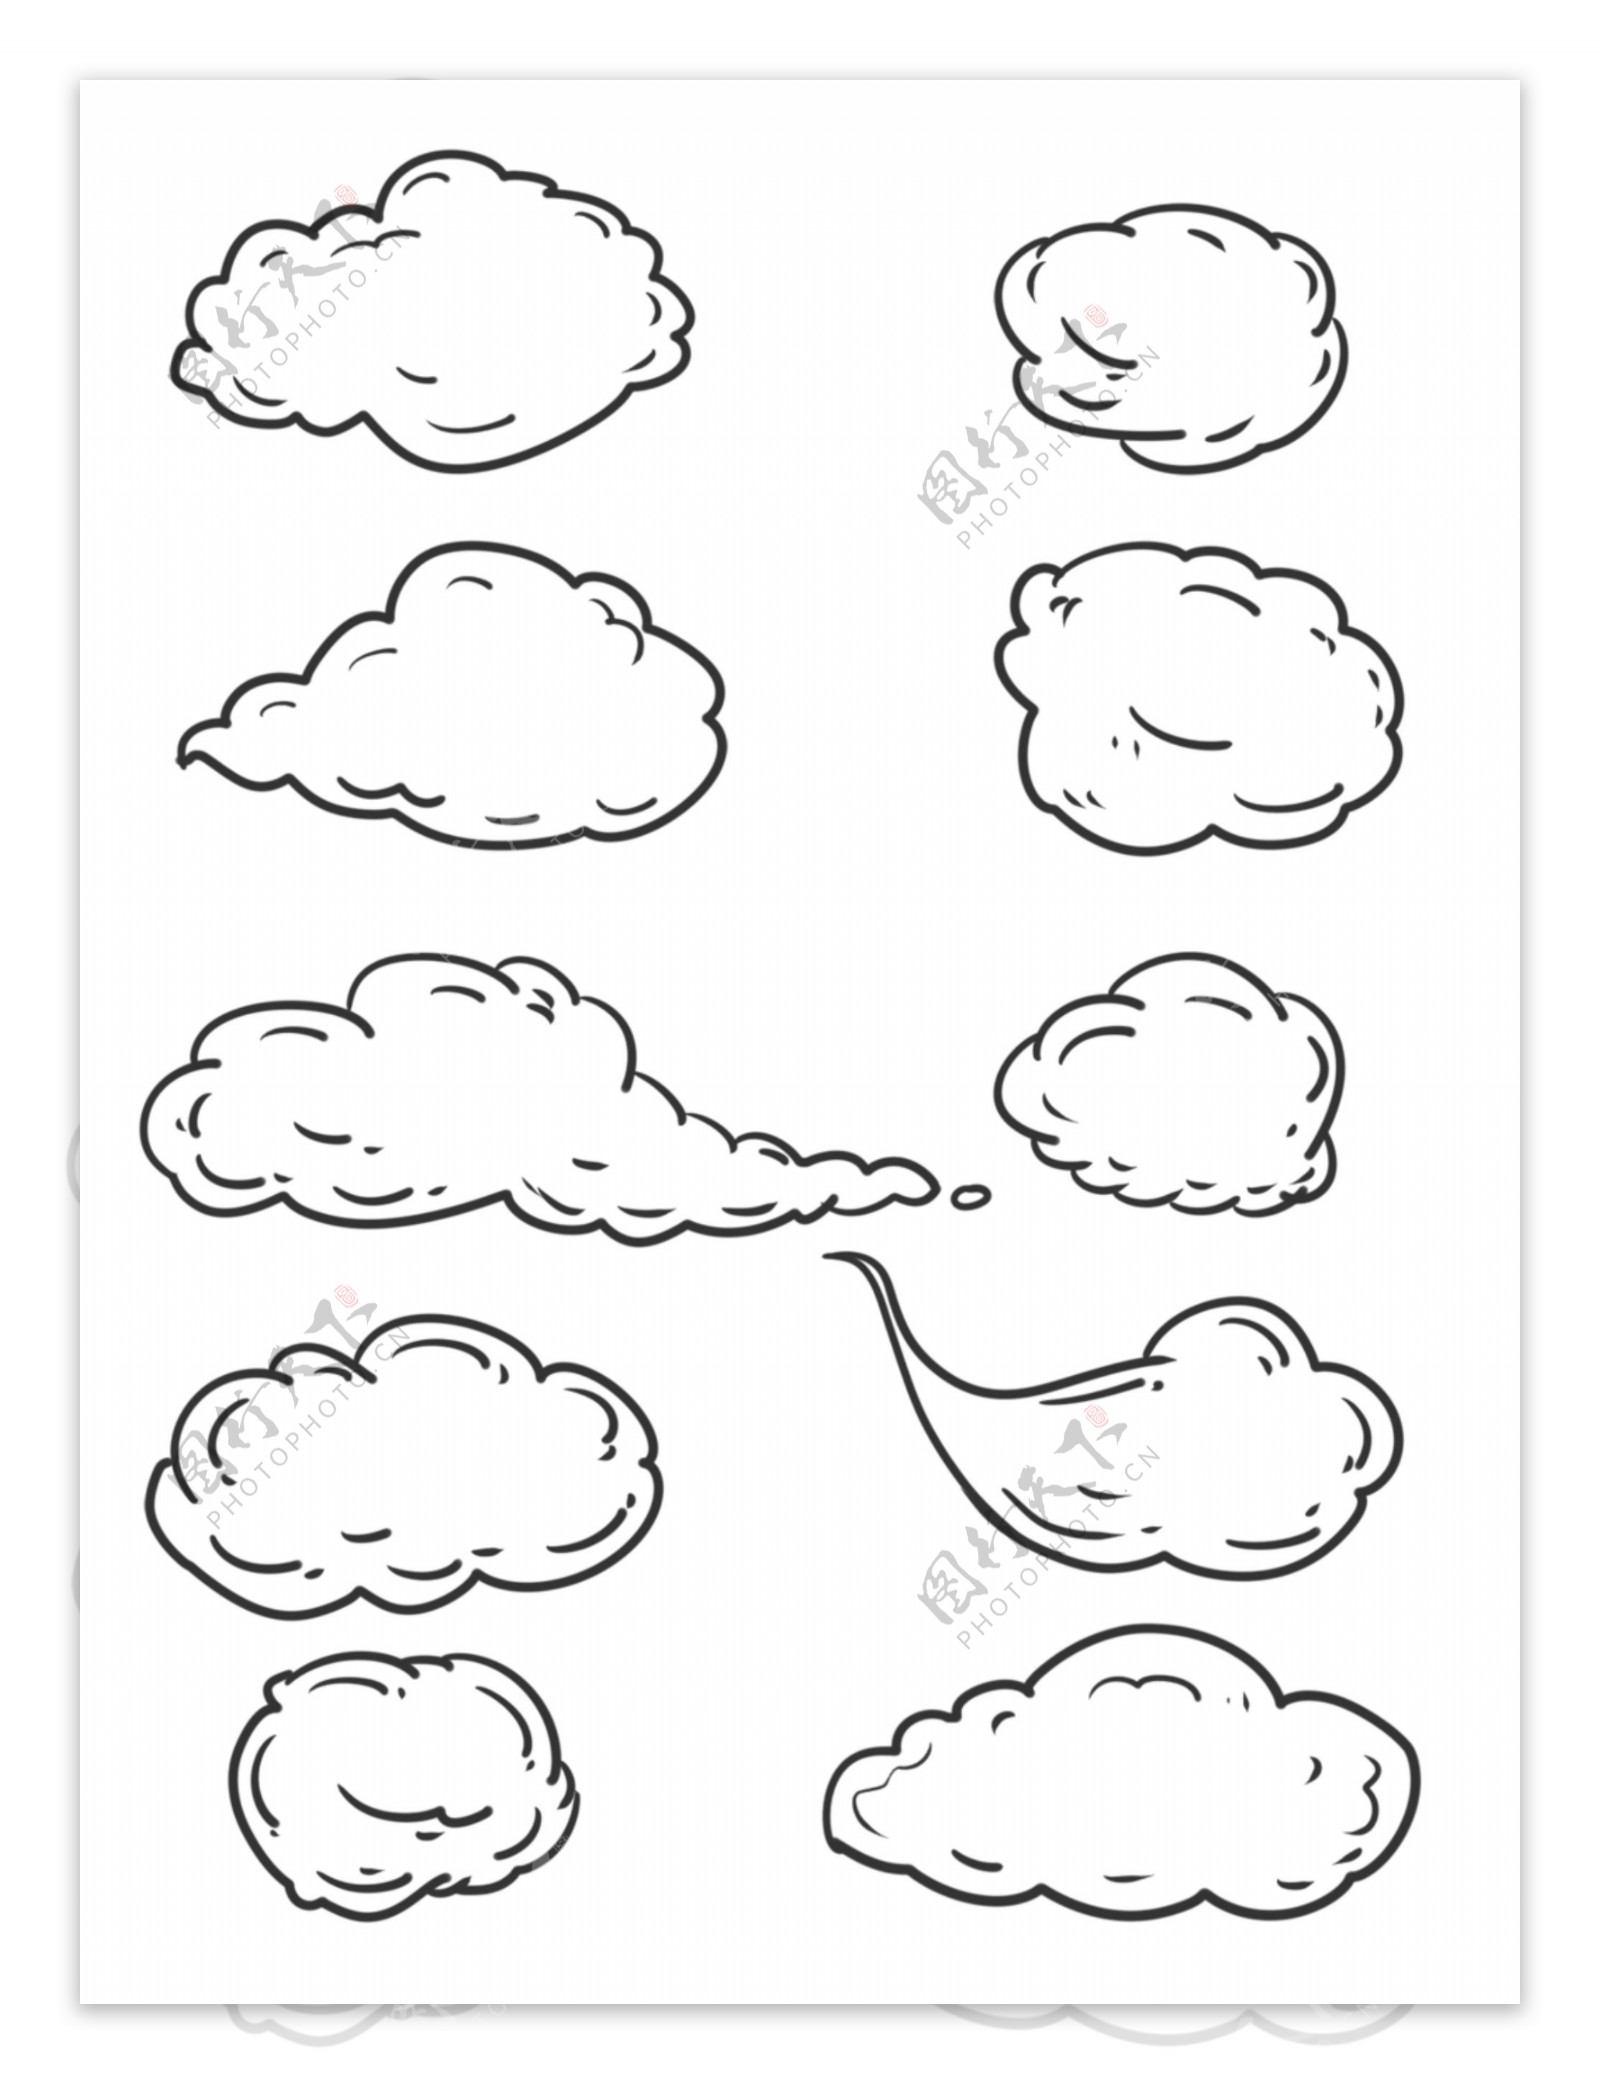 简约线条手绘云朵白云边框素材可商用元素